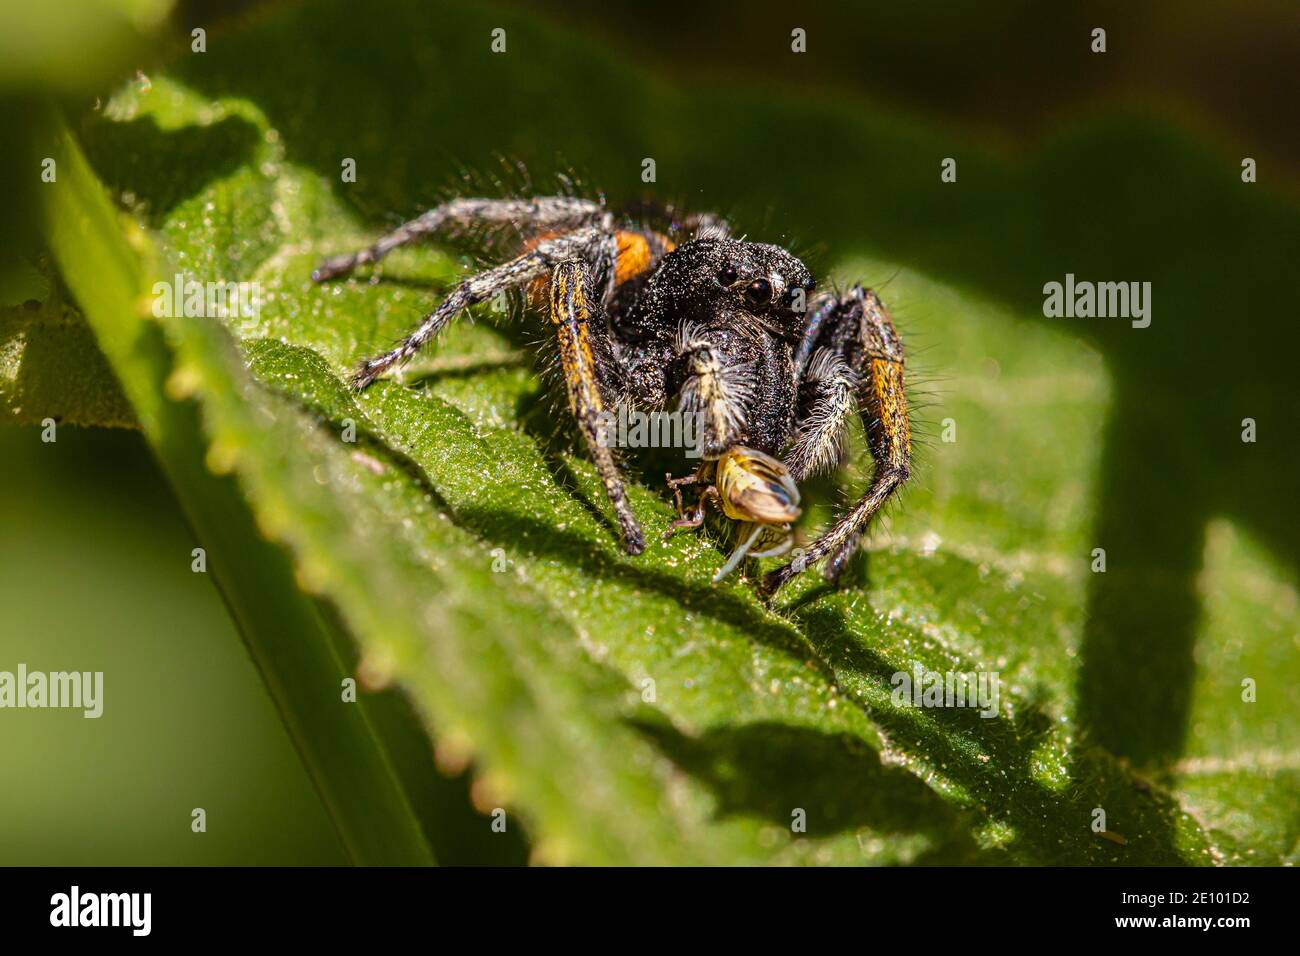 Goldaugen springende Spinne (Philaeus chrysops) mit Beute, Männchen, Zams,  Landeck, Tirol, Österreich, Europa Stockfotografie - Alamy